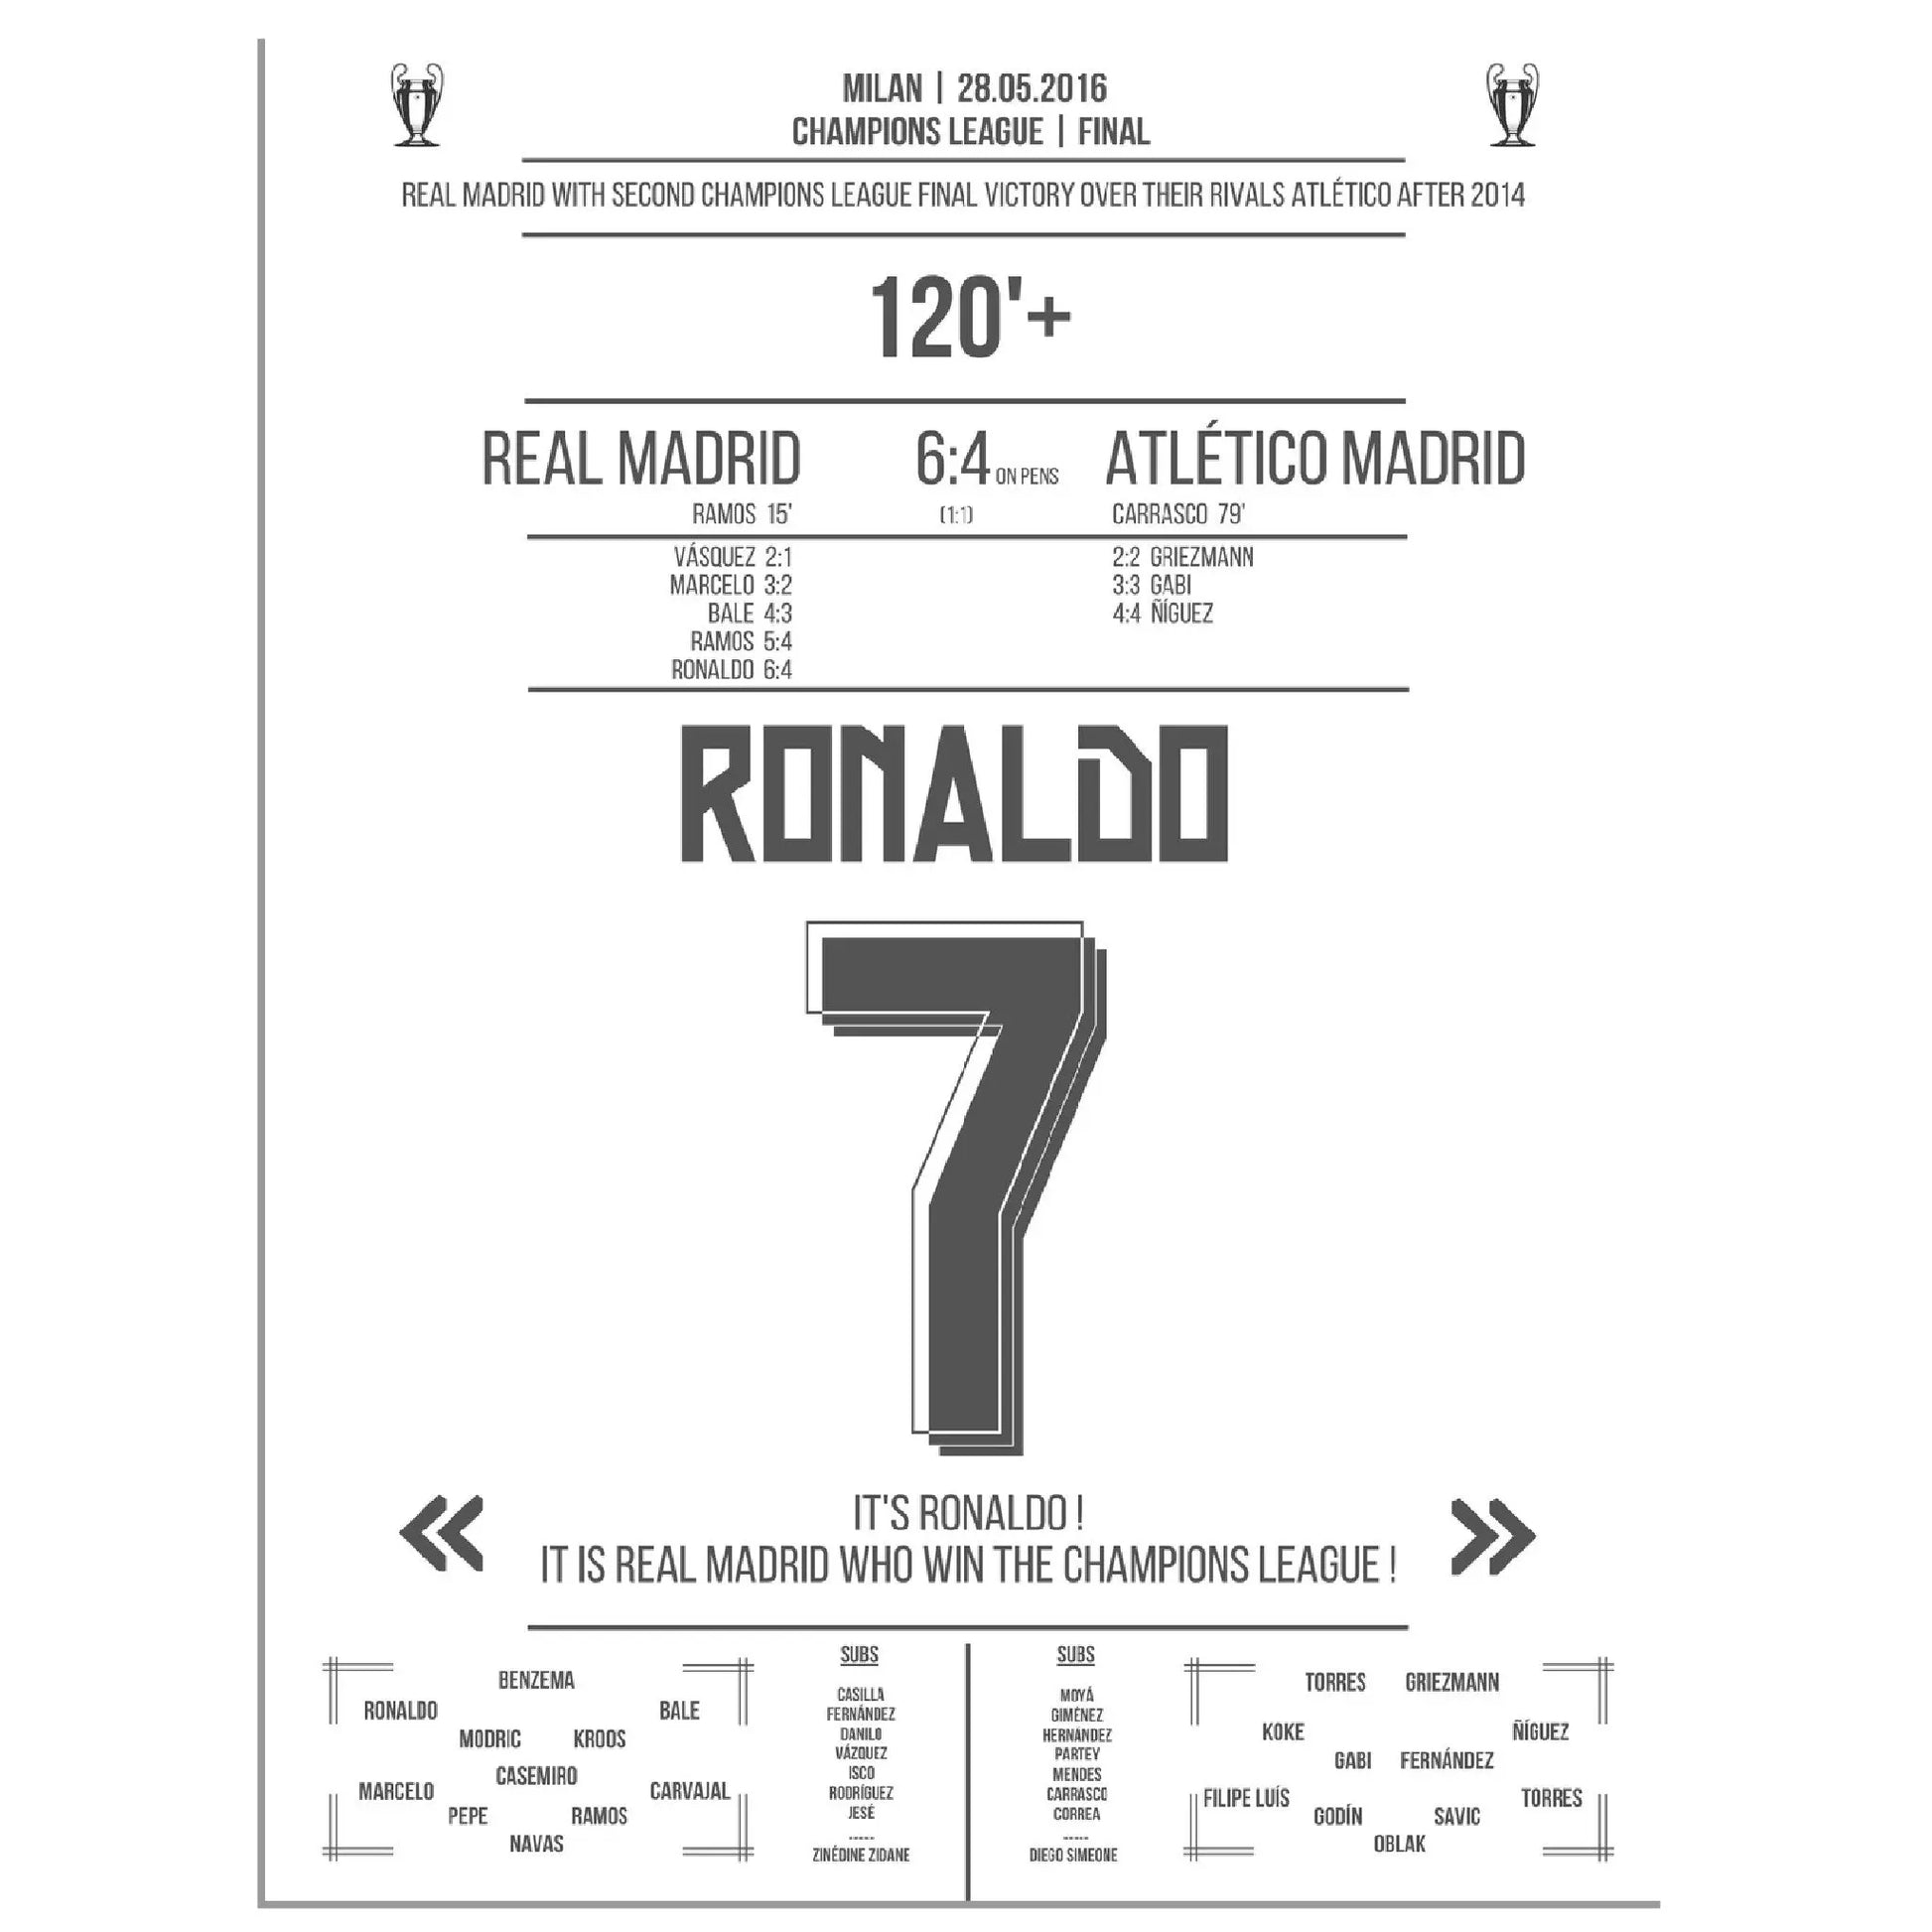 Ronaldo trifft den entscheidenden Elfer im zweiten Champions League Finalsieg Reals gegen Atletico 